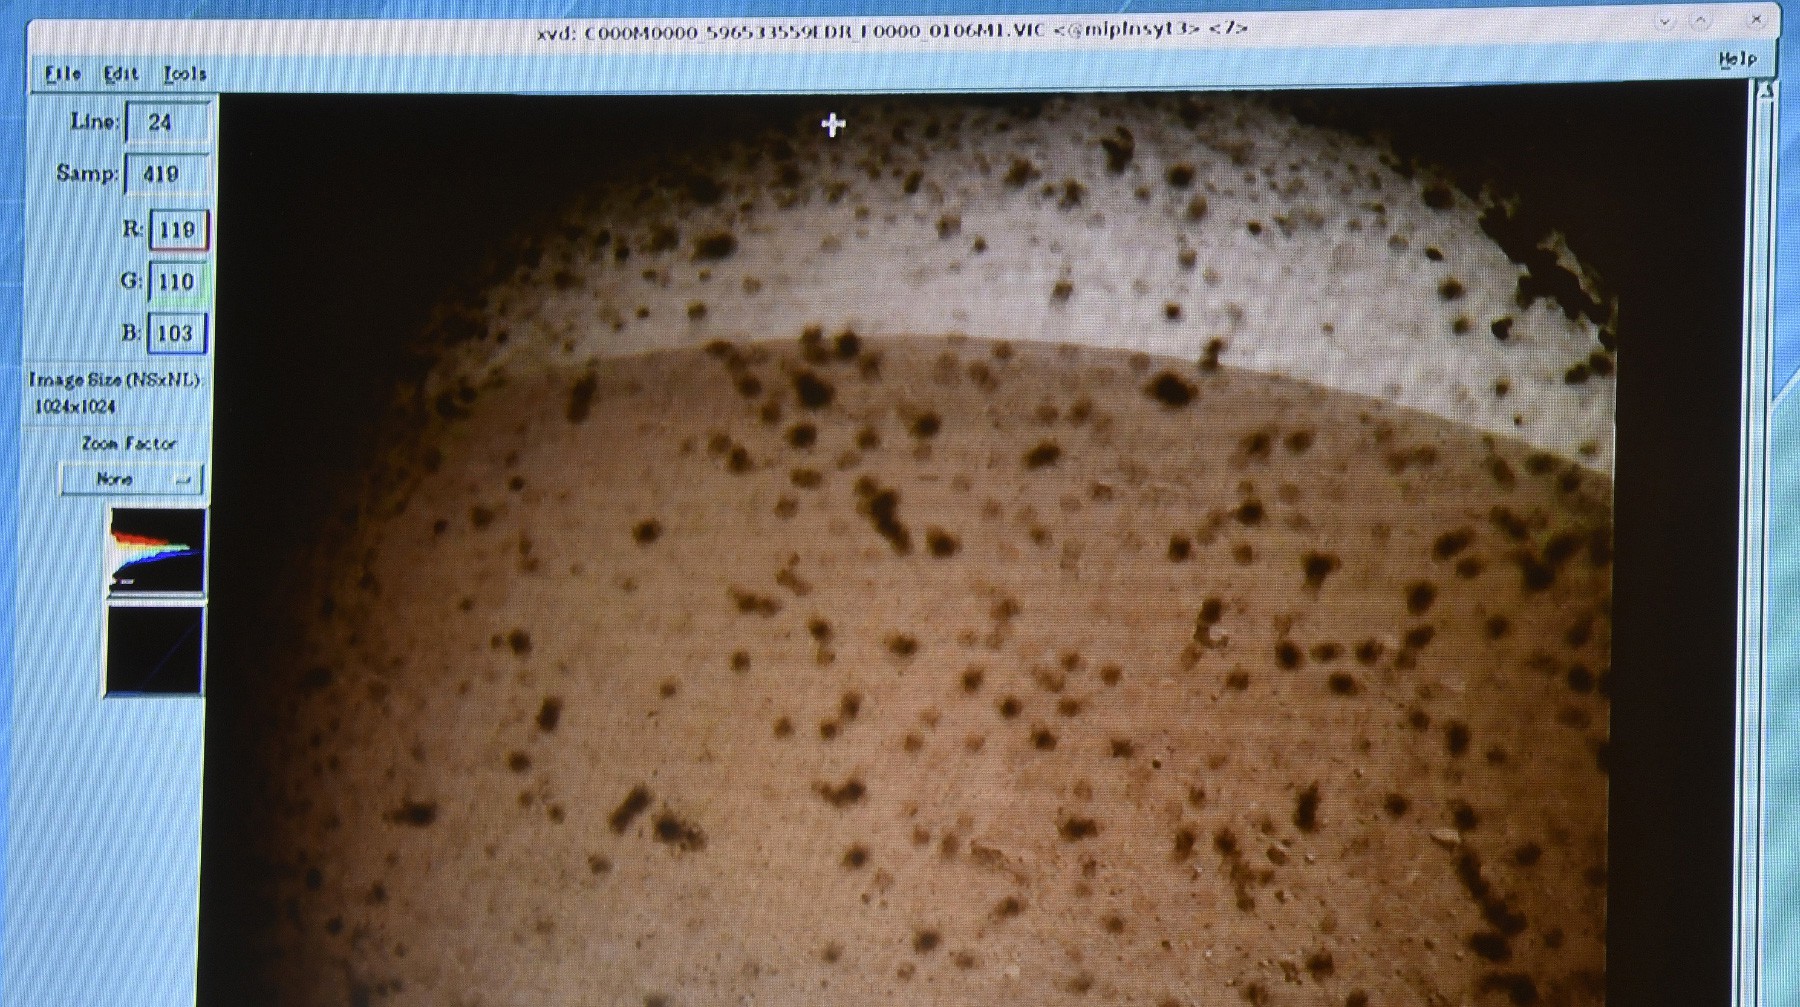 Dailystorm - Космический аппарат NASA InSight прислал первые снимки с Марса